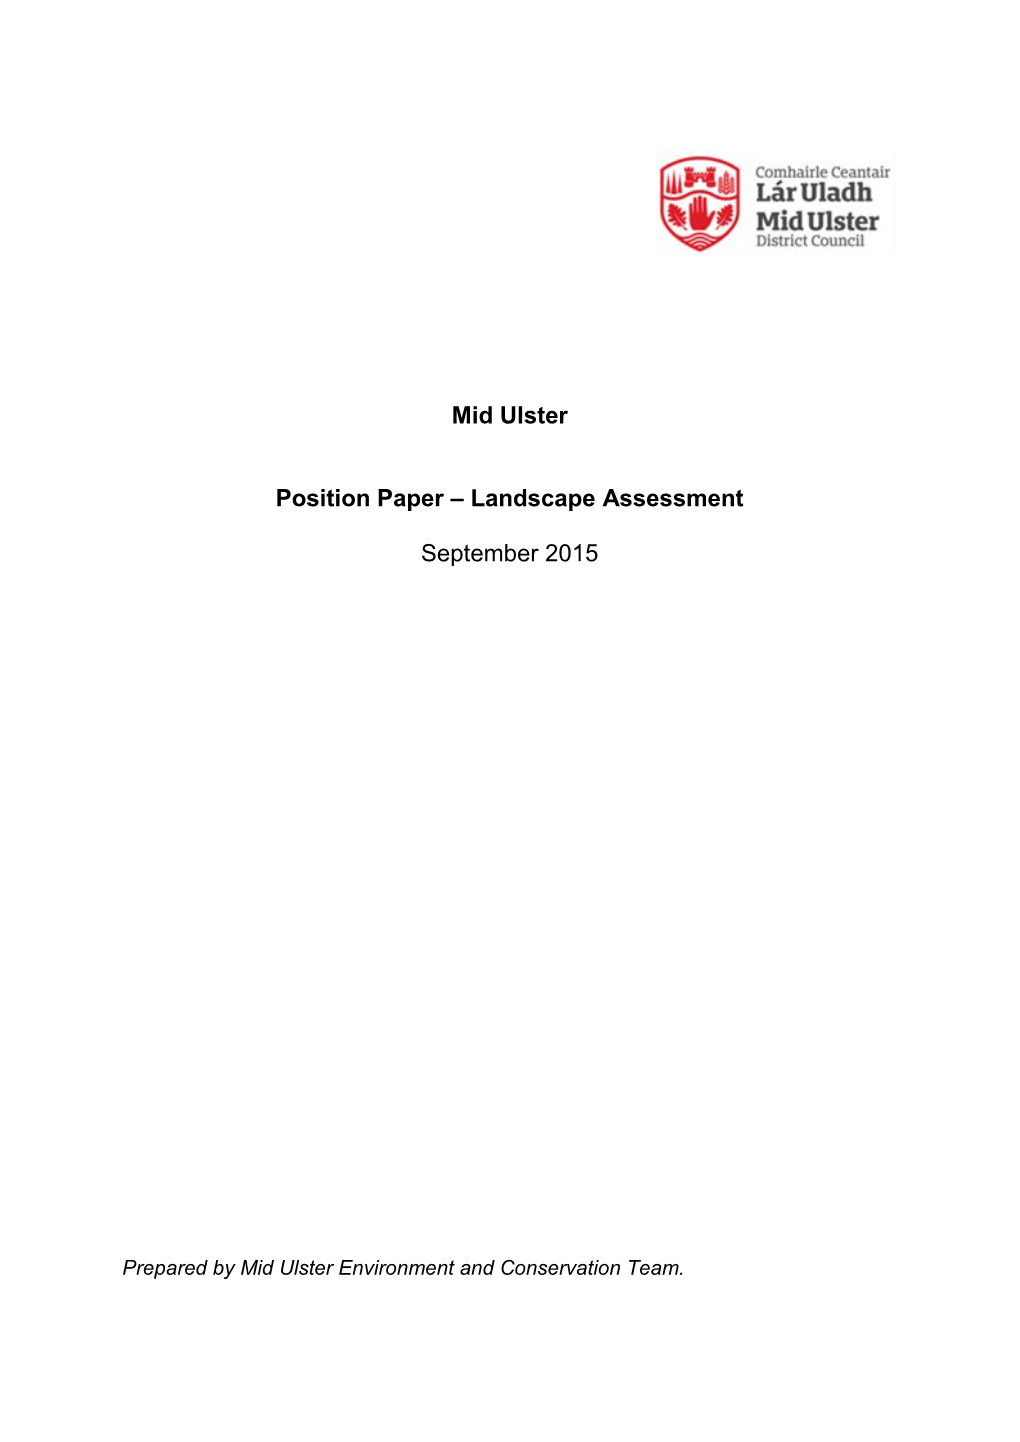 Landscape Assessment Position Paper